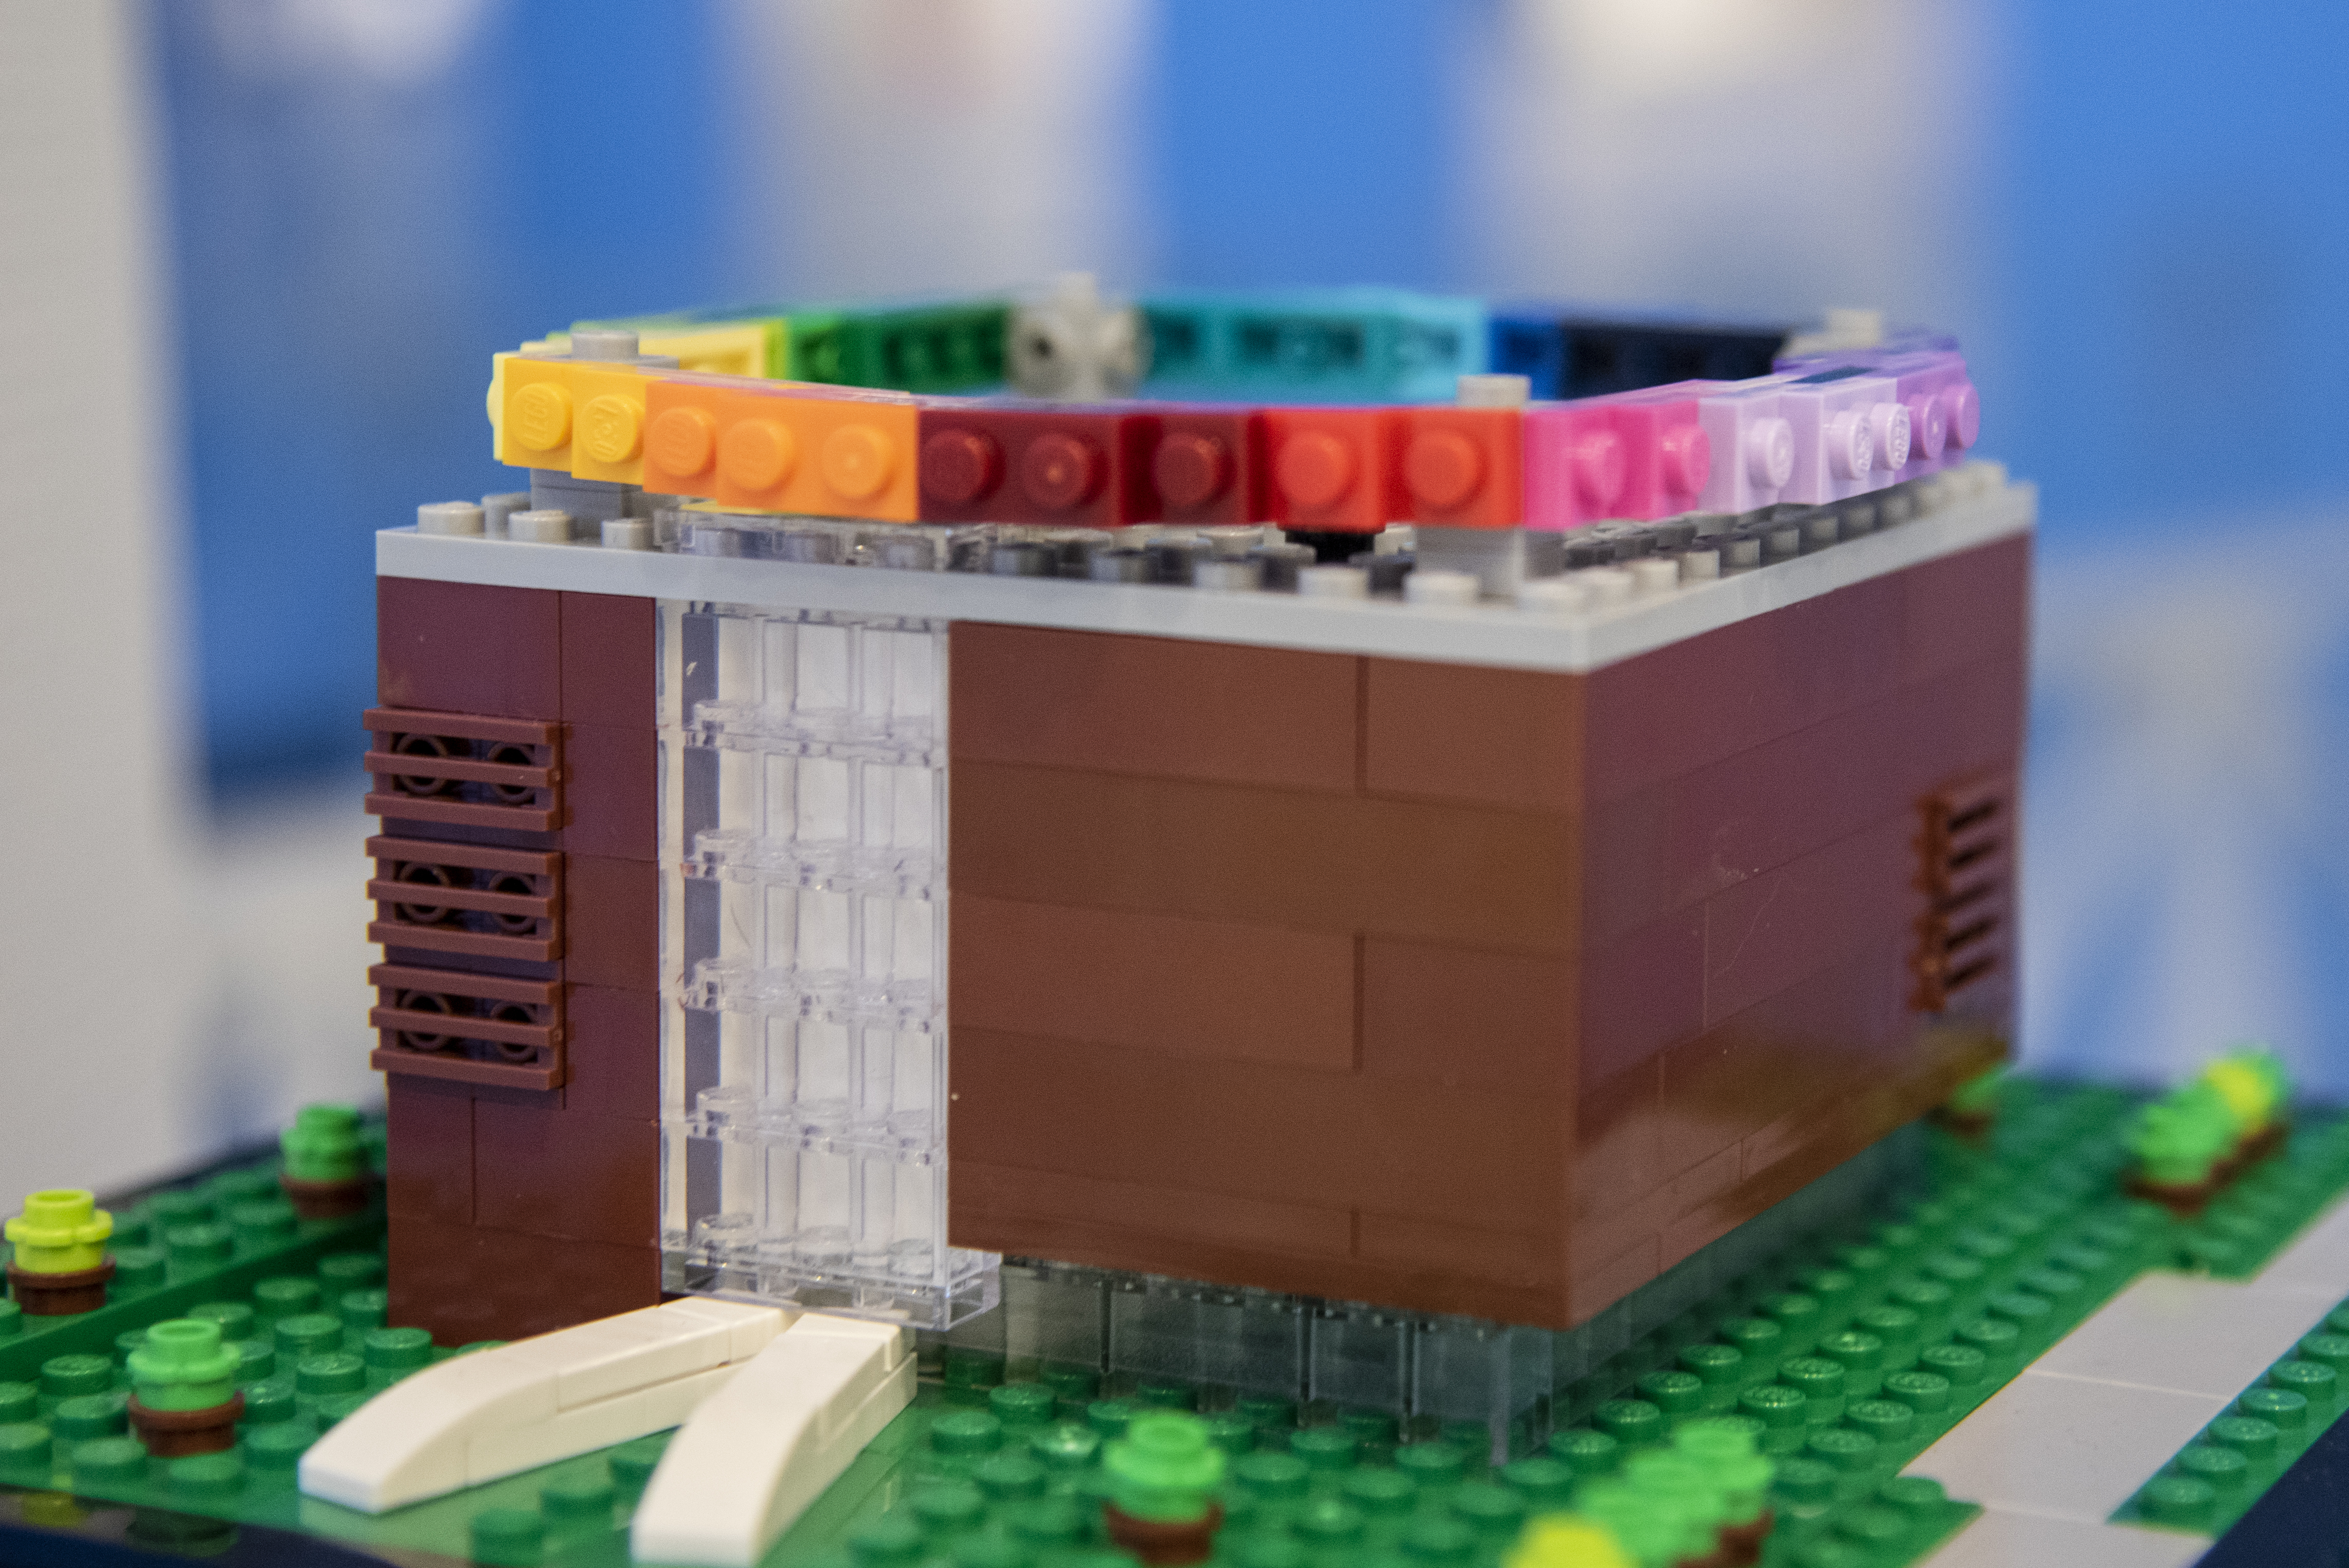 PRESSEMEDDELELSE: LEGOLAND® besøger Aarhus i for at bygge farvestrålende LEGO® med byggeglade børnefamilier | Billund